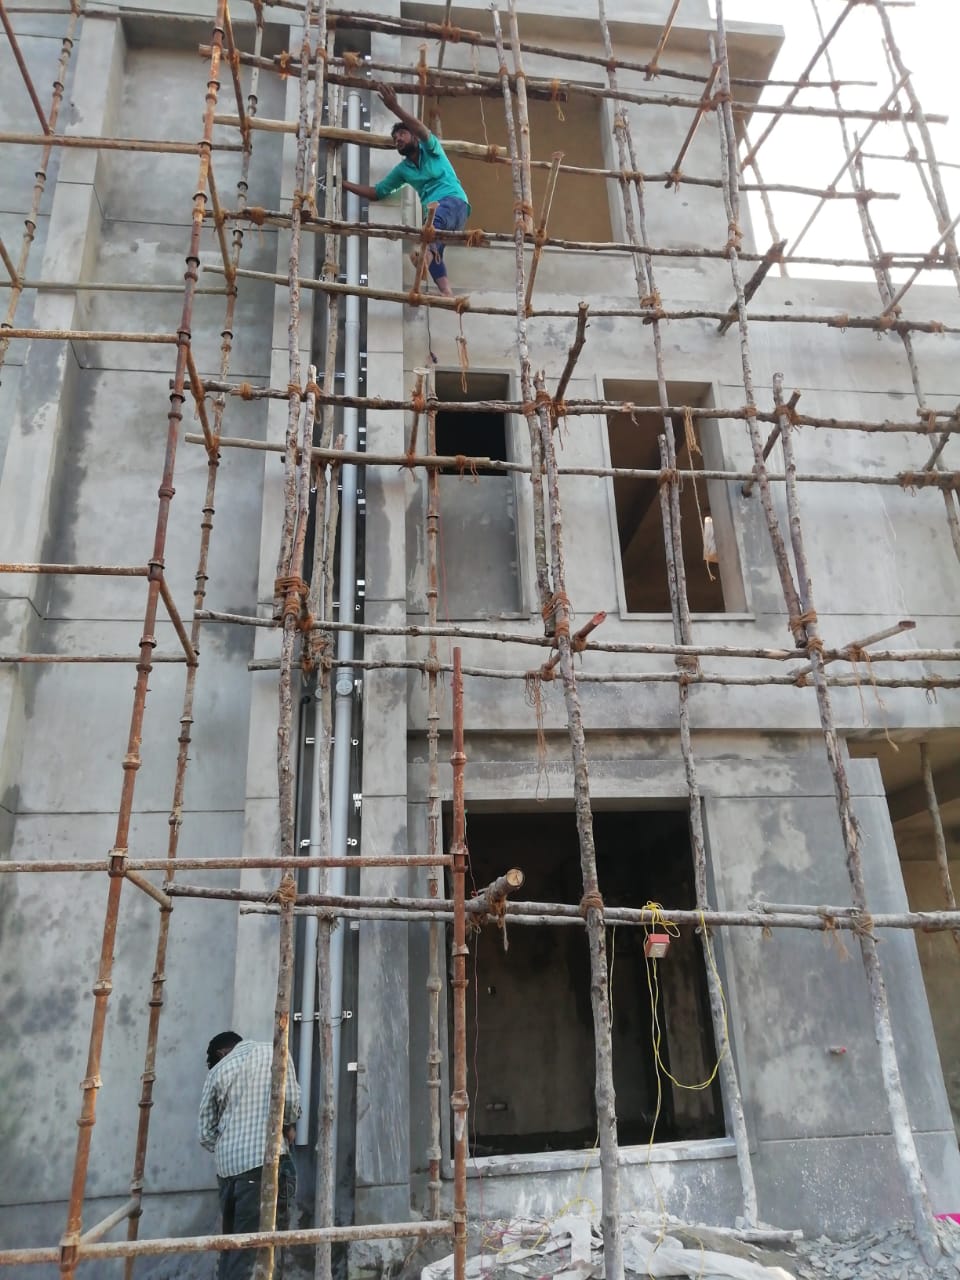 plumbing contractors in warangal | NEEDS RESOURCES | Plumbing contractors in warangal, experts plumbing contractors  in warangal, best plumbing contractors in warangal, plumbing for villa in warangal,  - GL104959